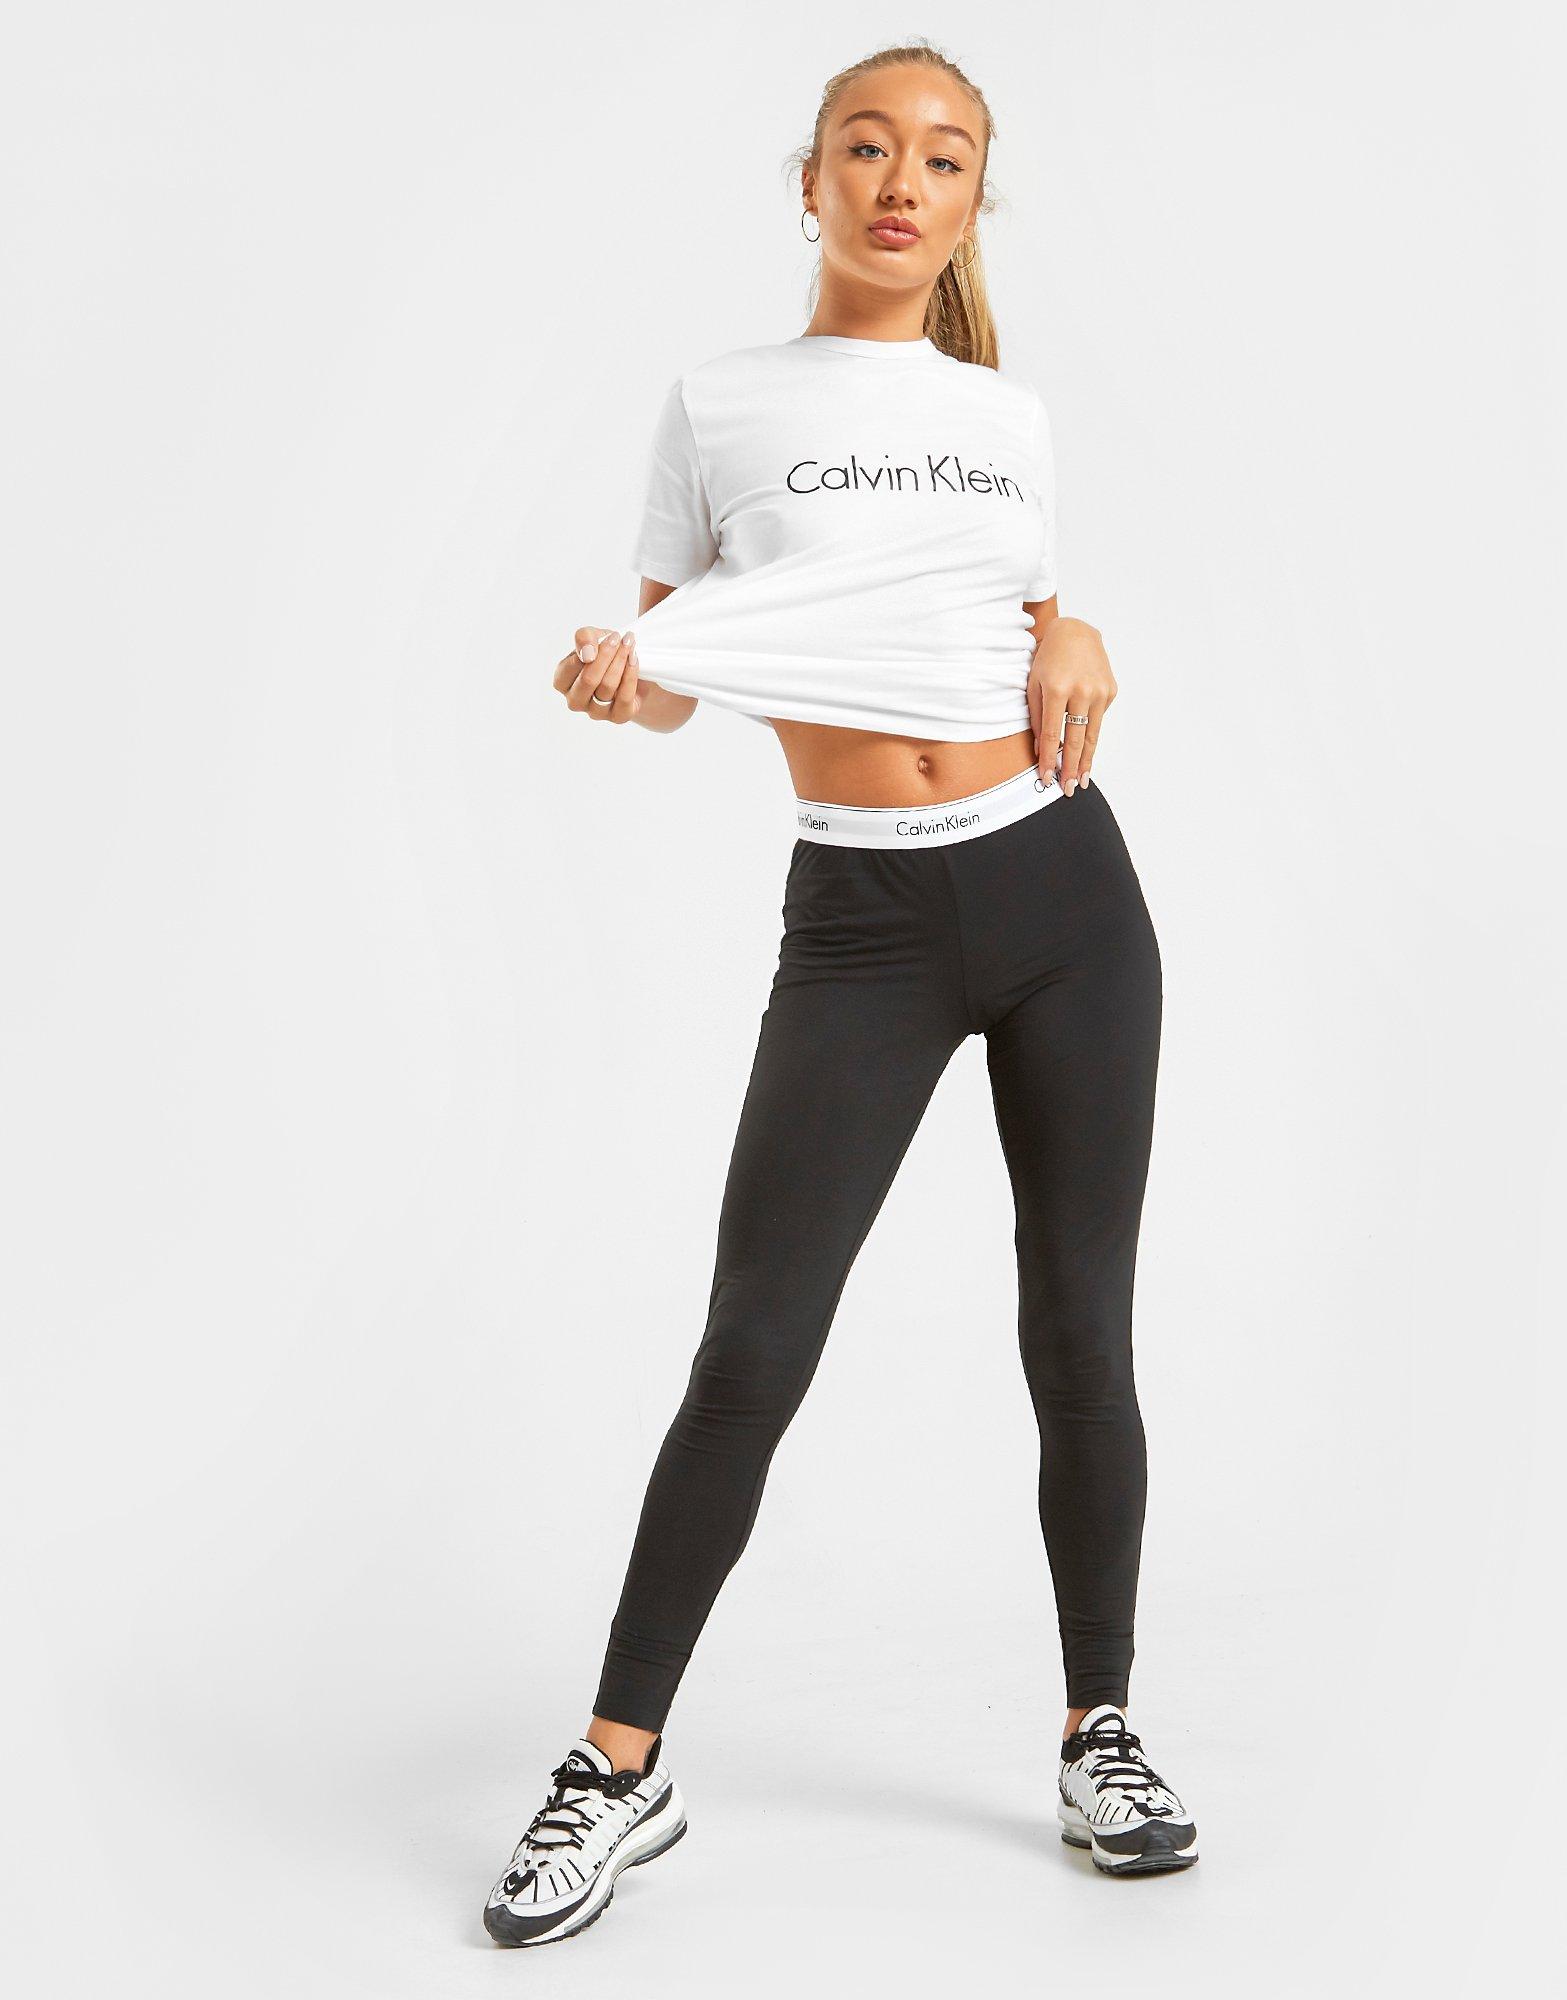 Calvin Klein, Modern Cotton leggings